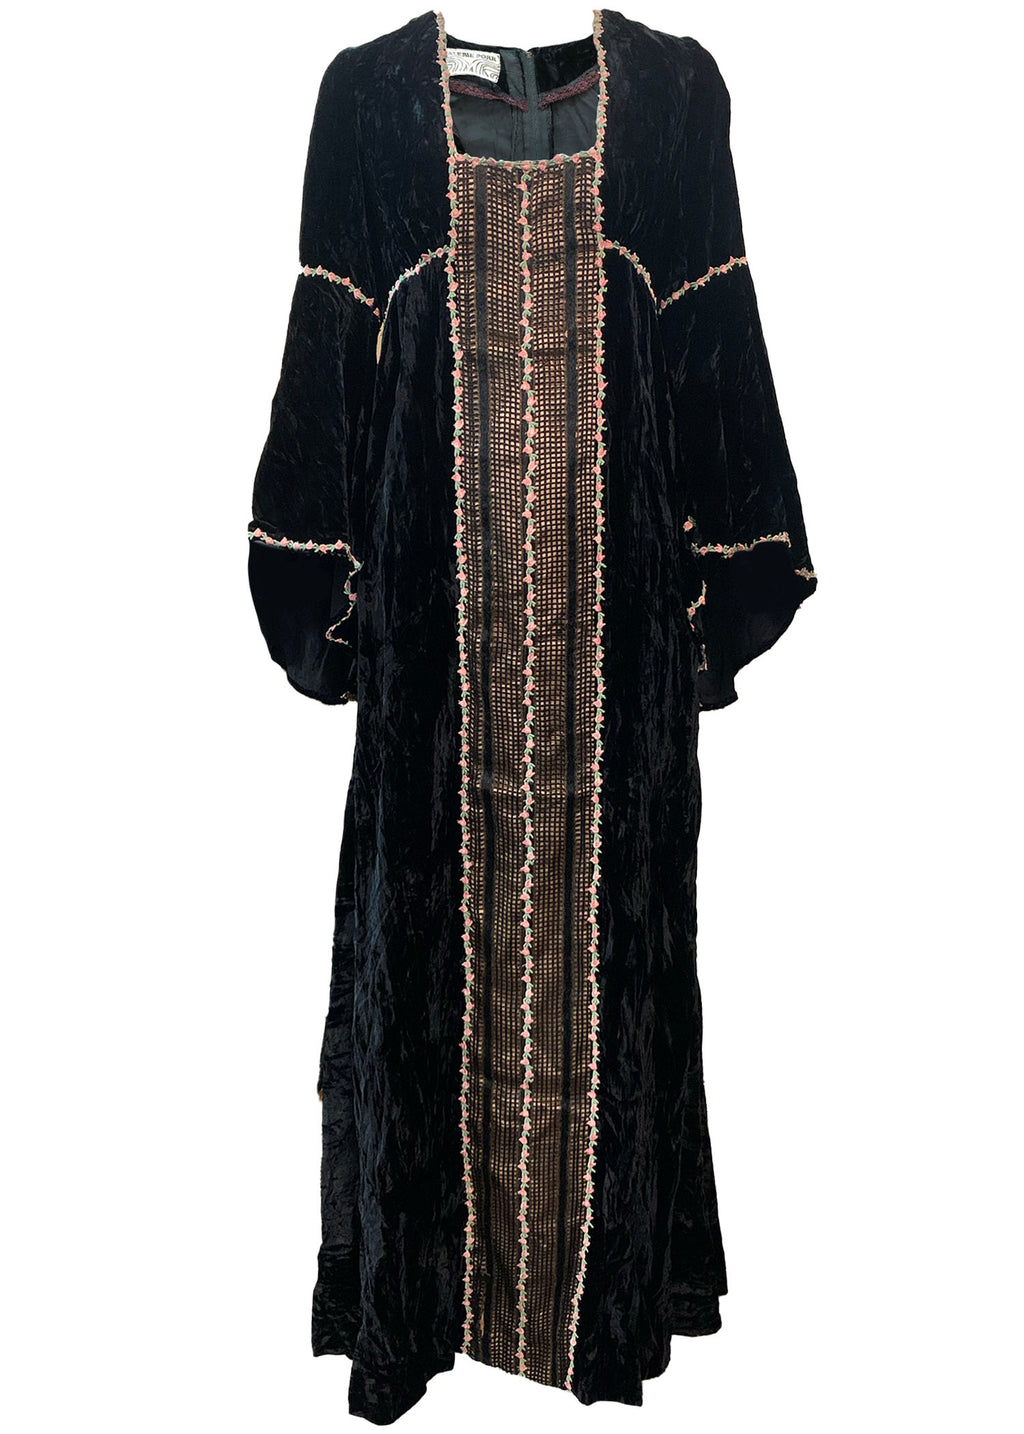  Valerie Corr 60s Black Velvet Neo Renaissance Maxi Dress FRONT 1 of 5